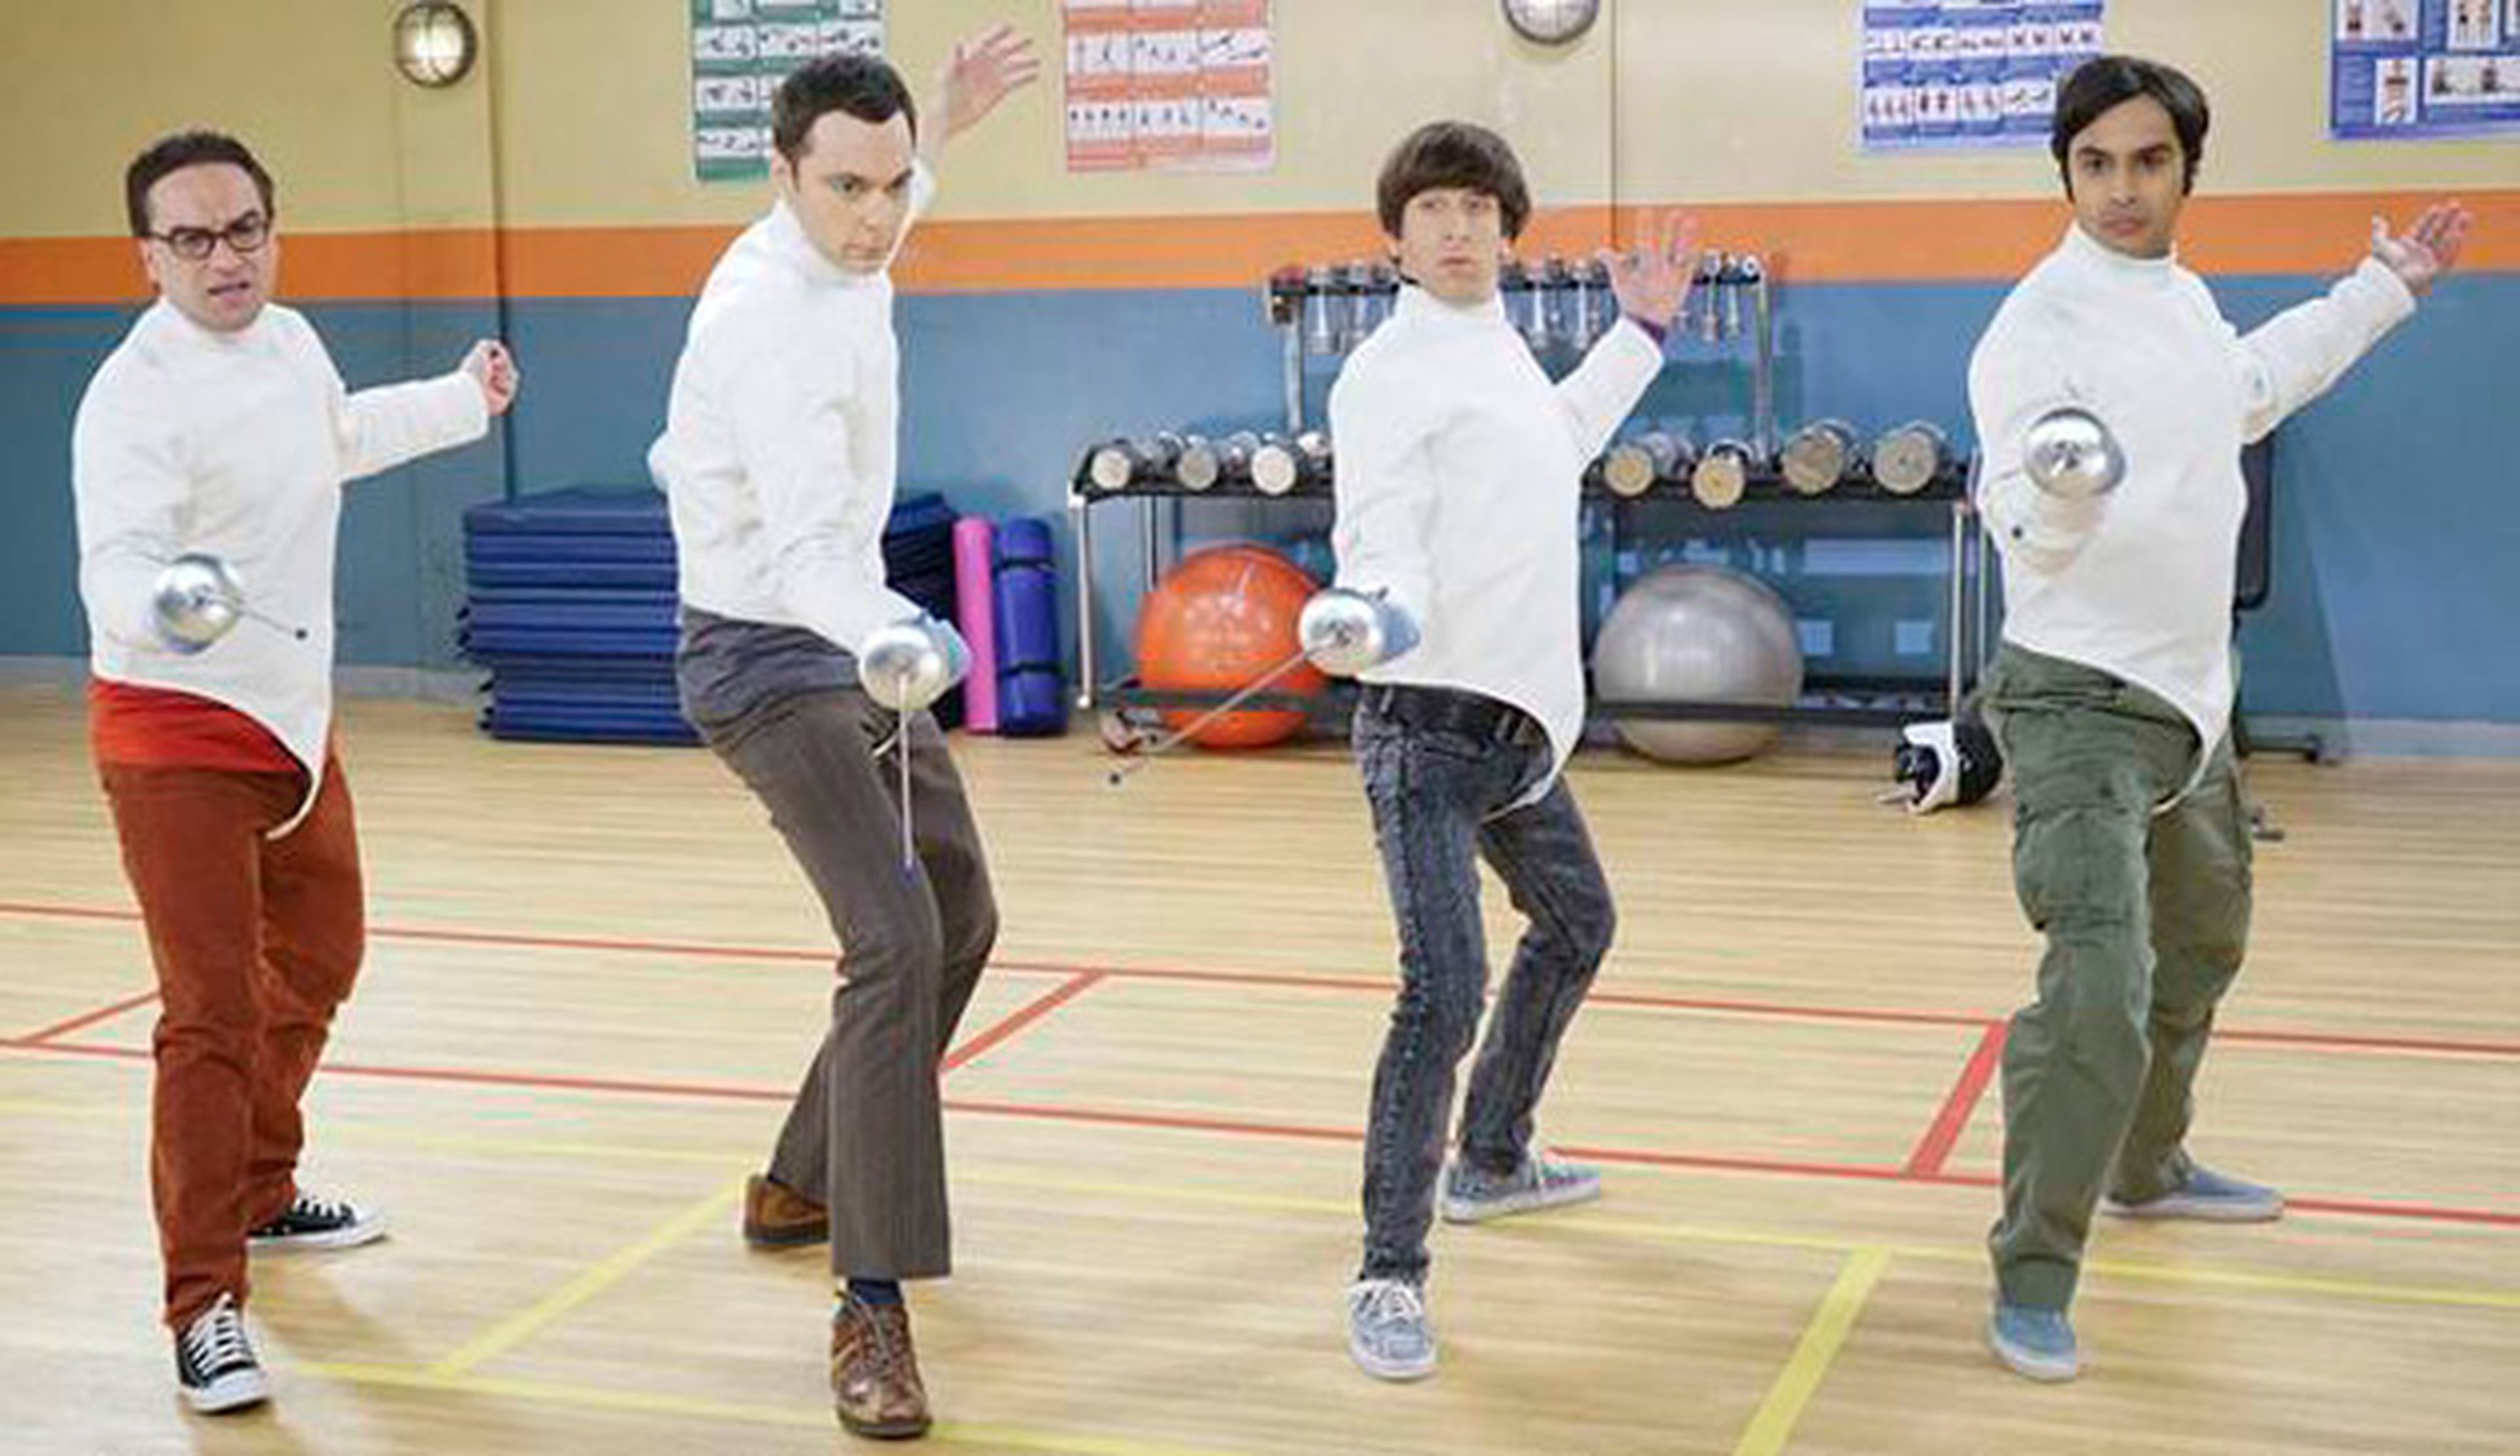 The Big Bang Theory temporada 9 - Final de fiesta y maratón